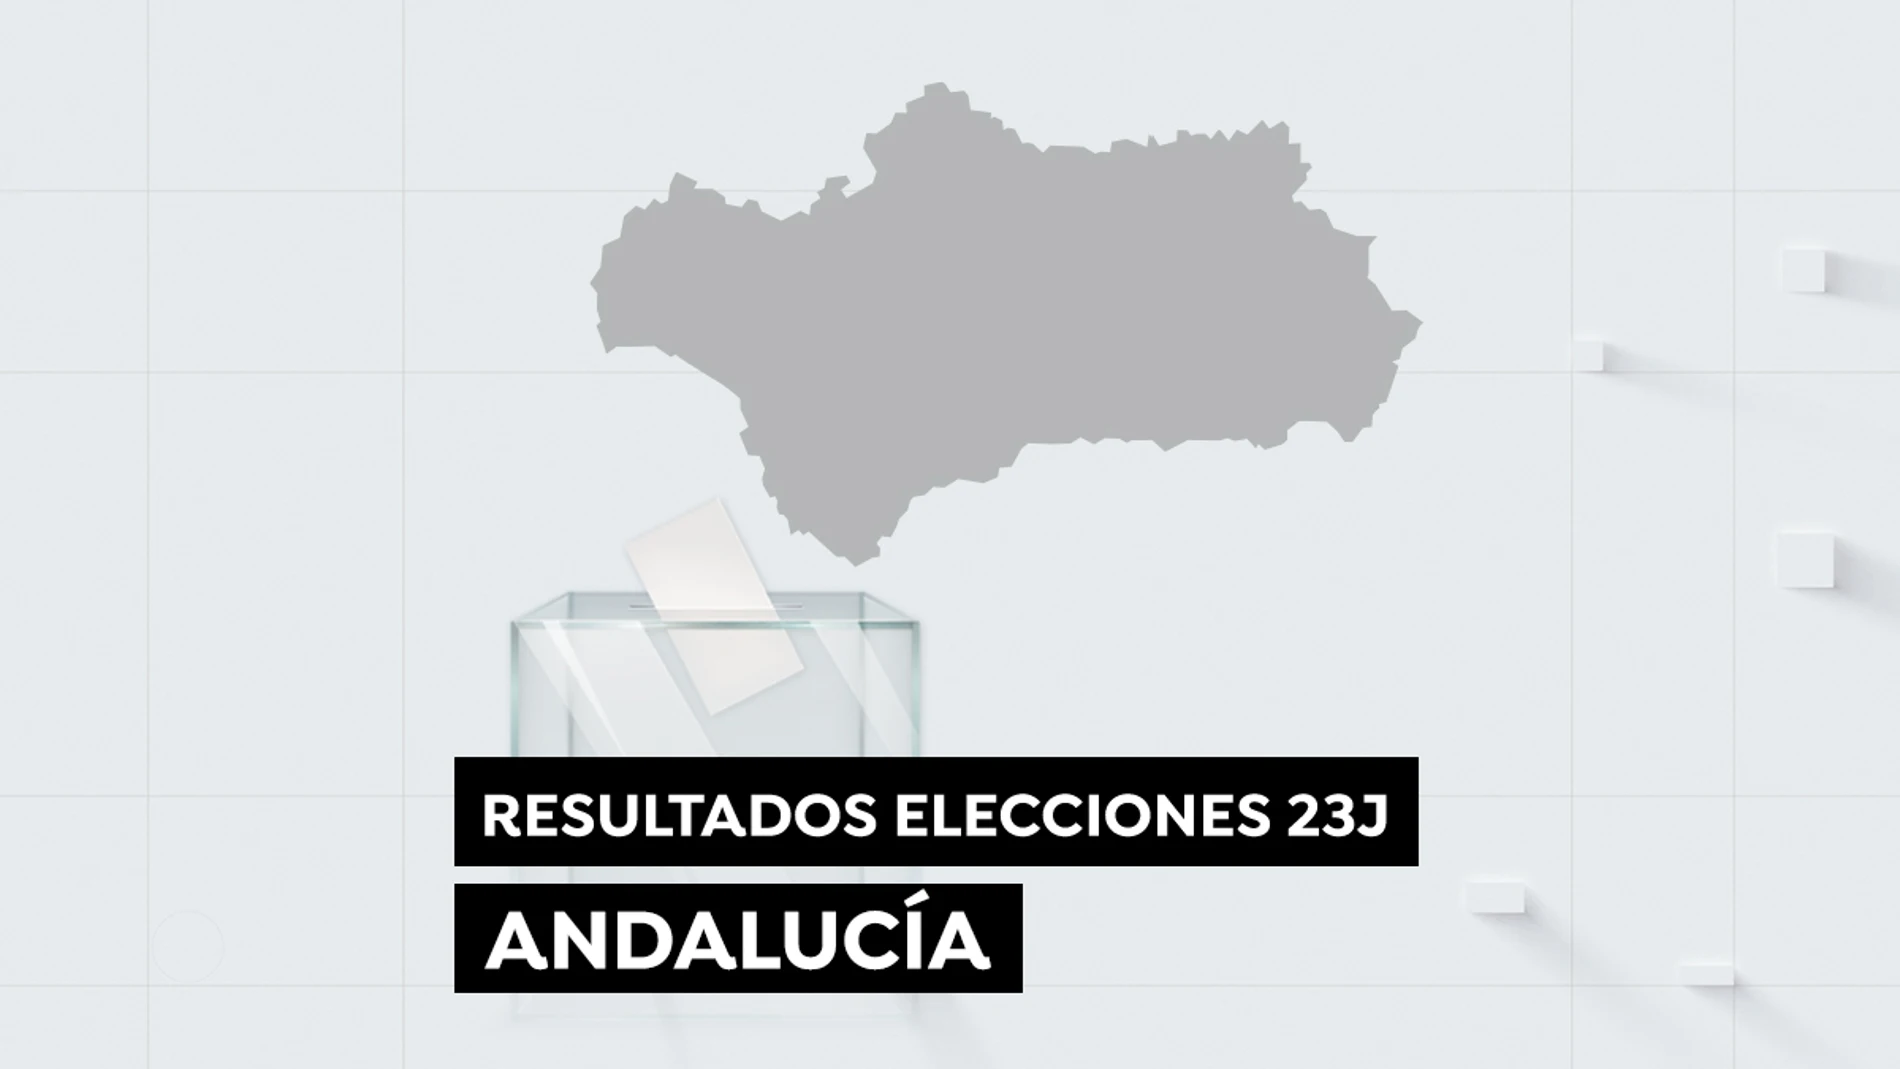 Resultado elecciones Andalucía